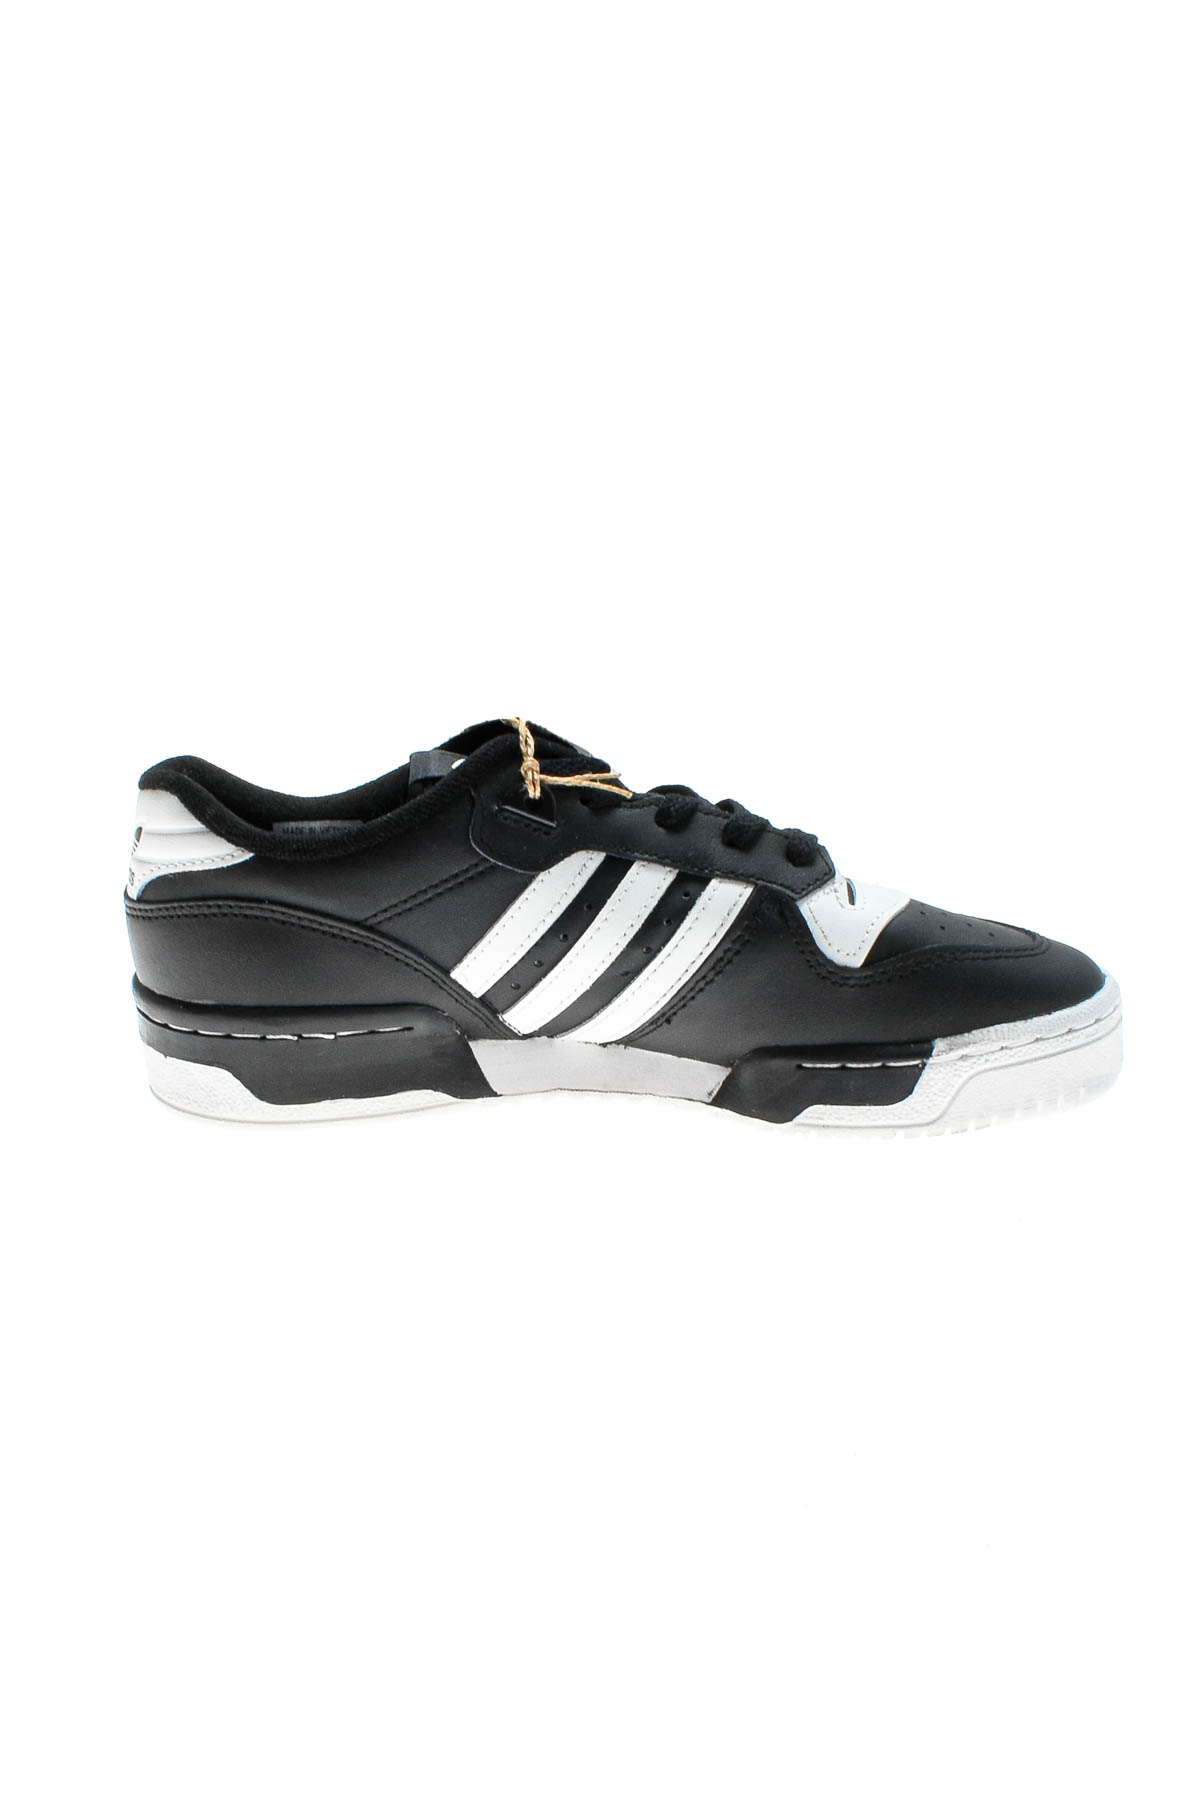 Γυναικεία αθλητικά παπούτσια - Adidas - 2